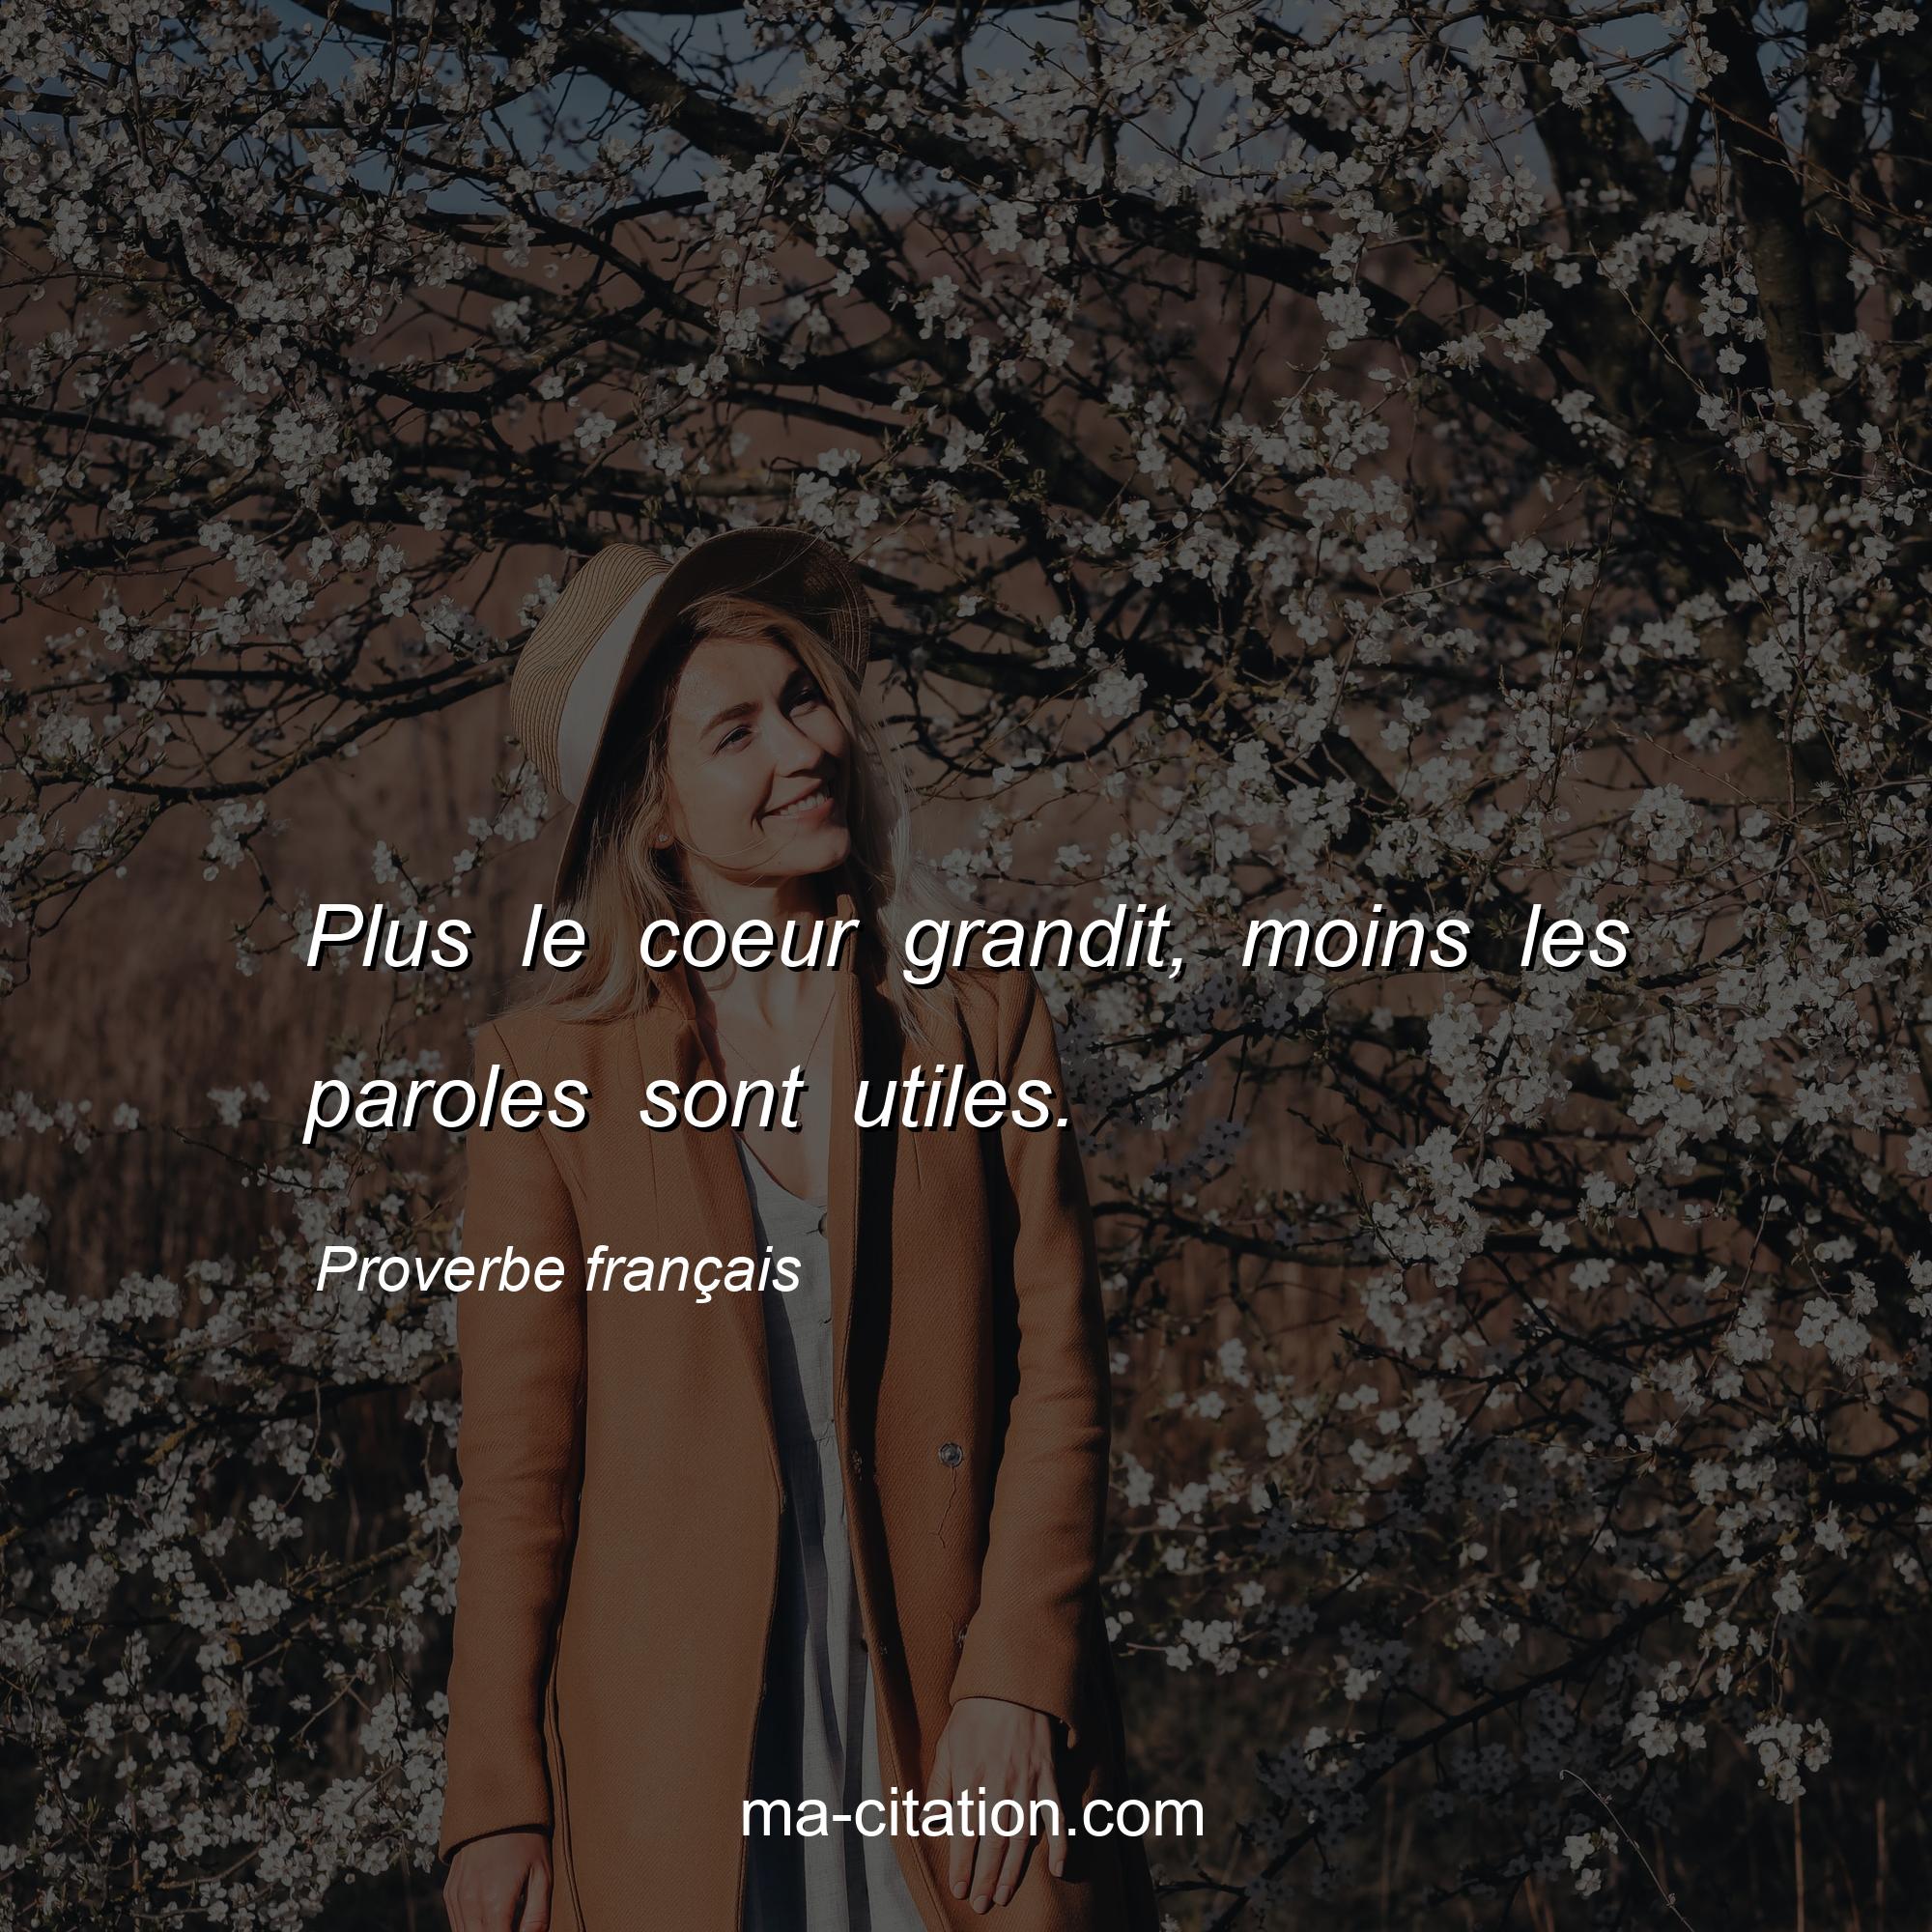 Proverbe français : Plus le coeur grandit, moins les paroles sont utiles.